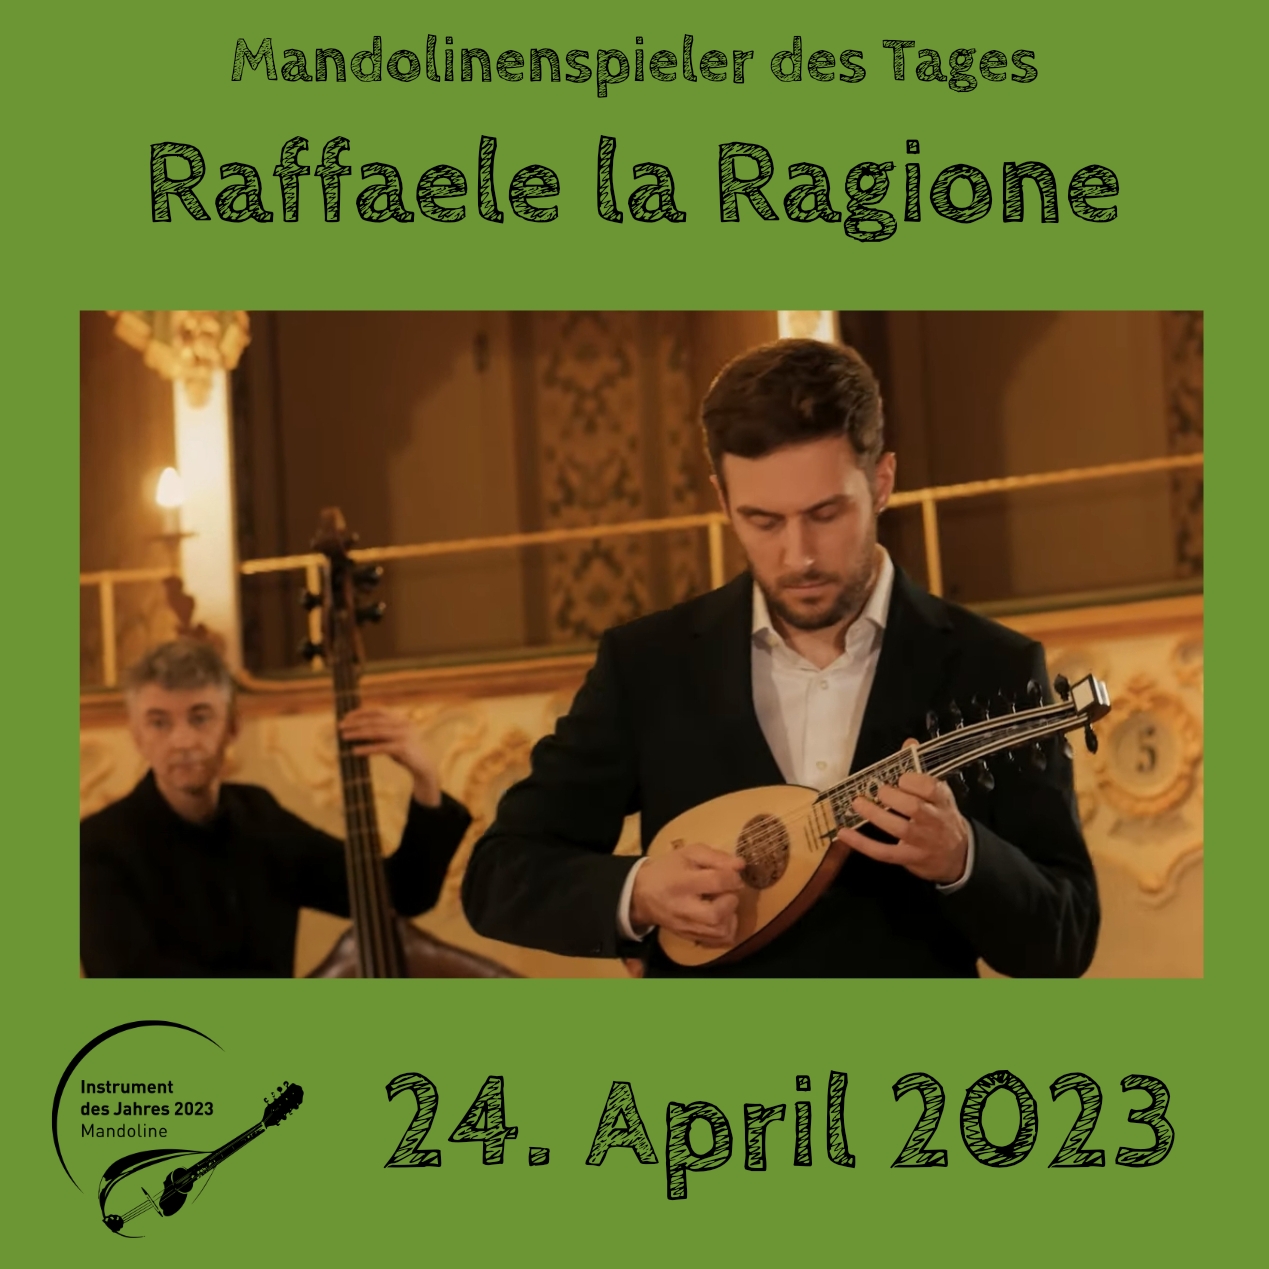 Raffaele la Ragione Instrument des Jahres 2023 Mandolinenspieler Mandolinenspielerin des Tages